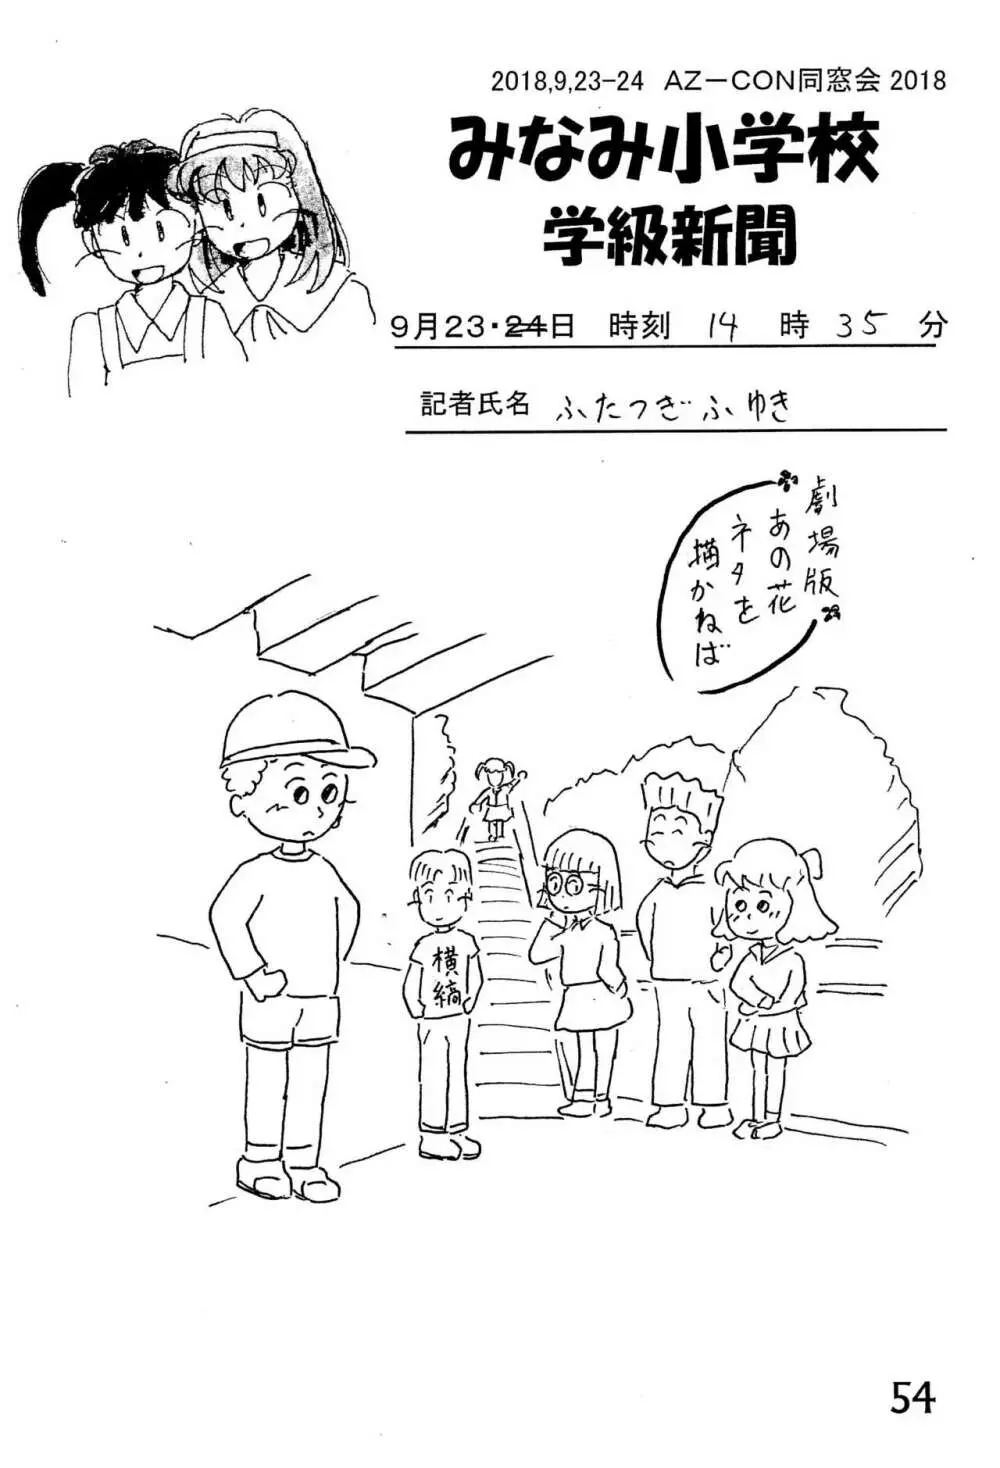 みなみ小学校学級新聞2018+号外版 54ページ